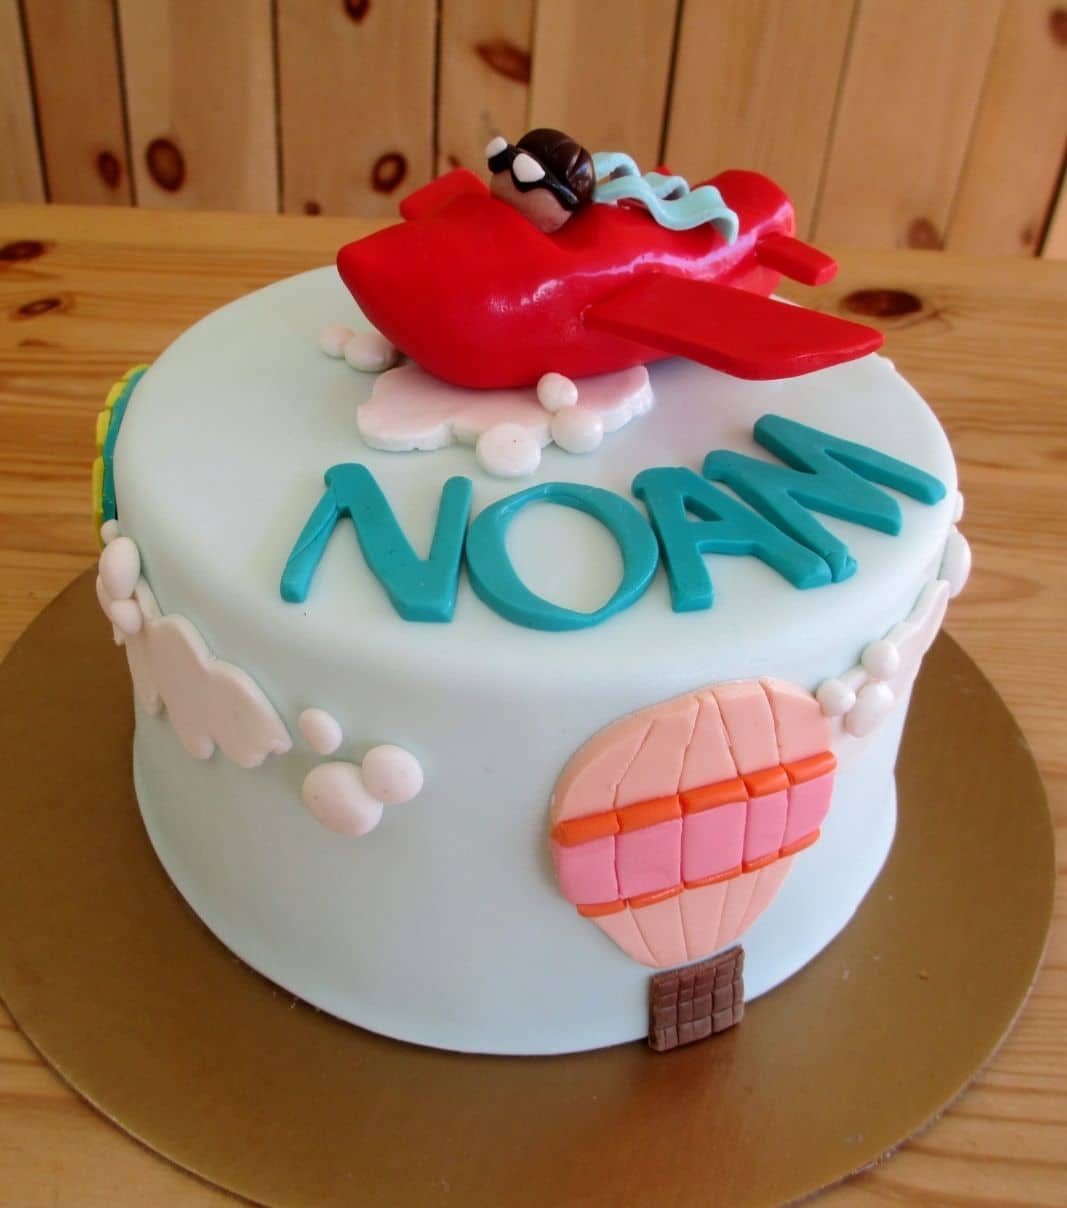 Gâteau d'anniversaire sur mesure de Noam: gâteau à thématique d'avion et montgolfière avec une couverture en fondant en décoré d'un avion avec son pilote, de nuages et de montgolfières 2D en fondant.